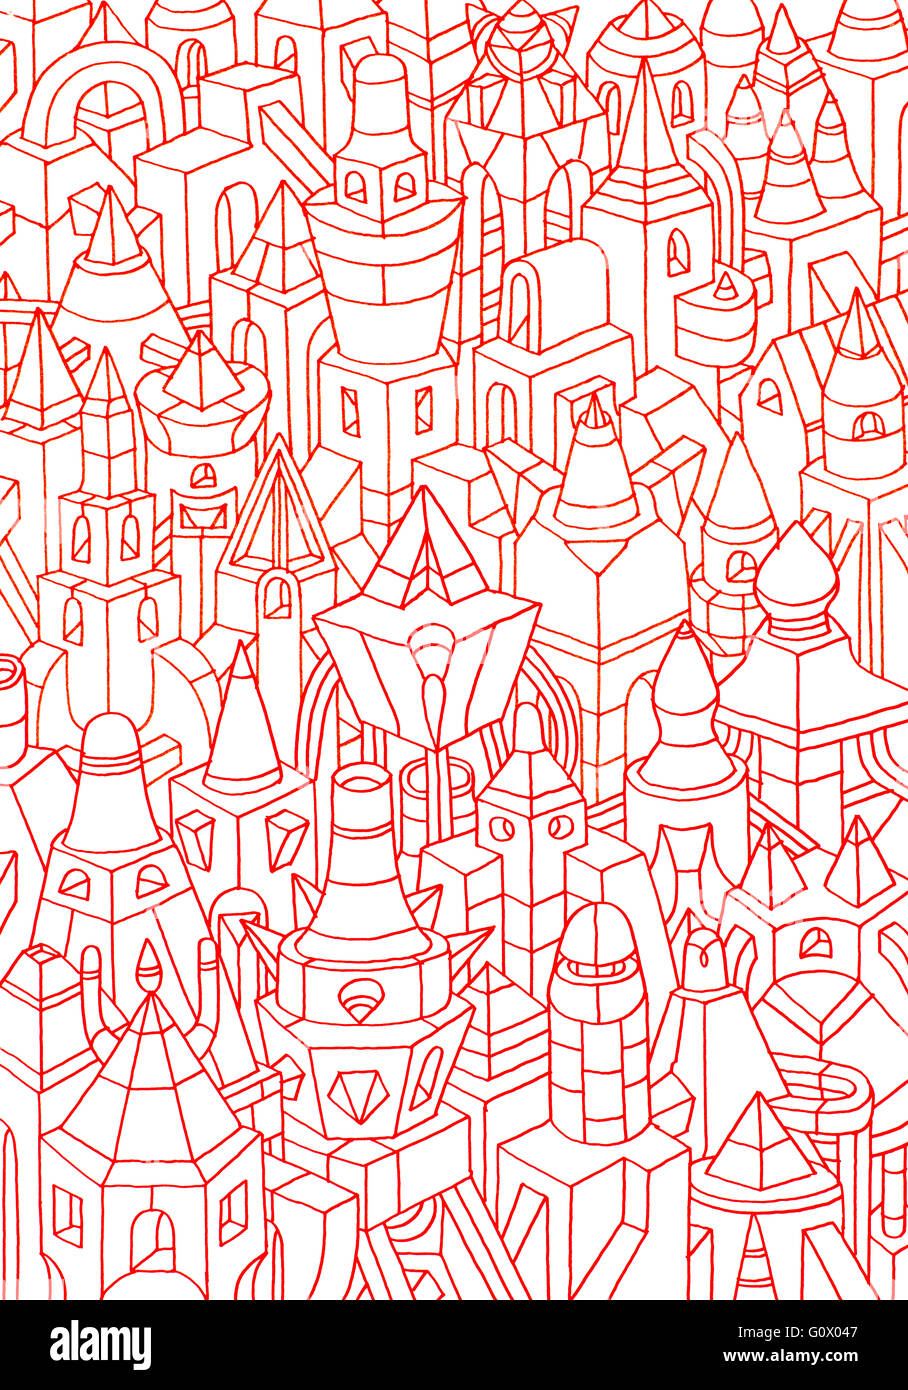 Boceto de color rojo de pequeños edificios y casas, dibujo de formas geométricas, representando una ciudad Foto de stock